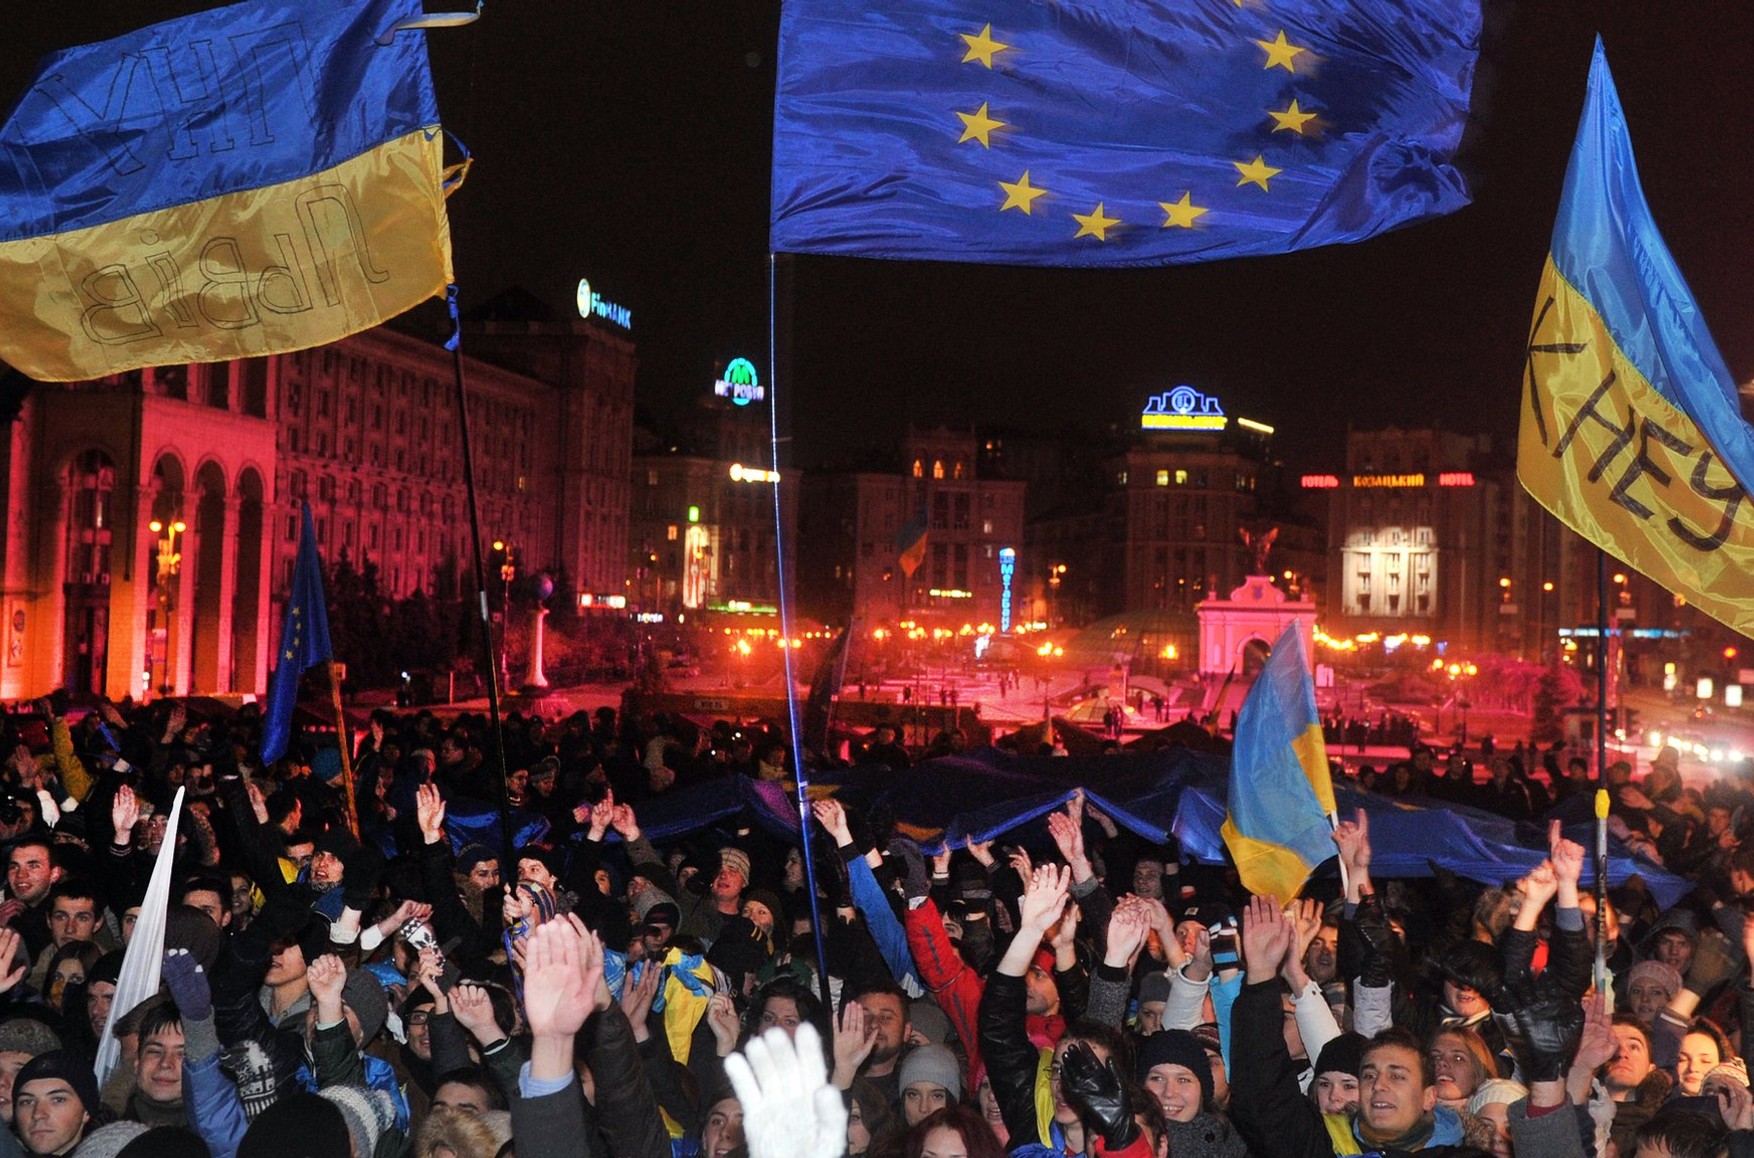 Все 27 стран-членов ЕС договорились о статусе кандидата для Украины — Bloomberg